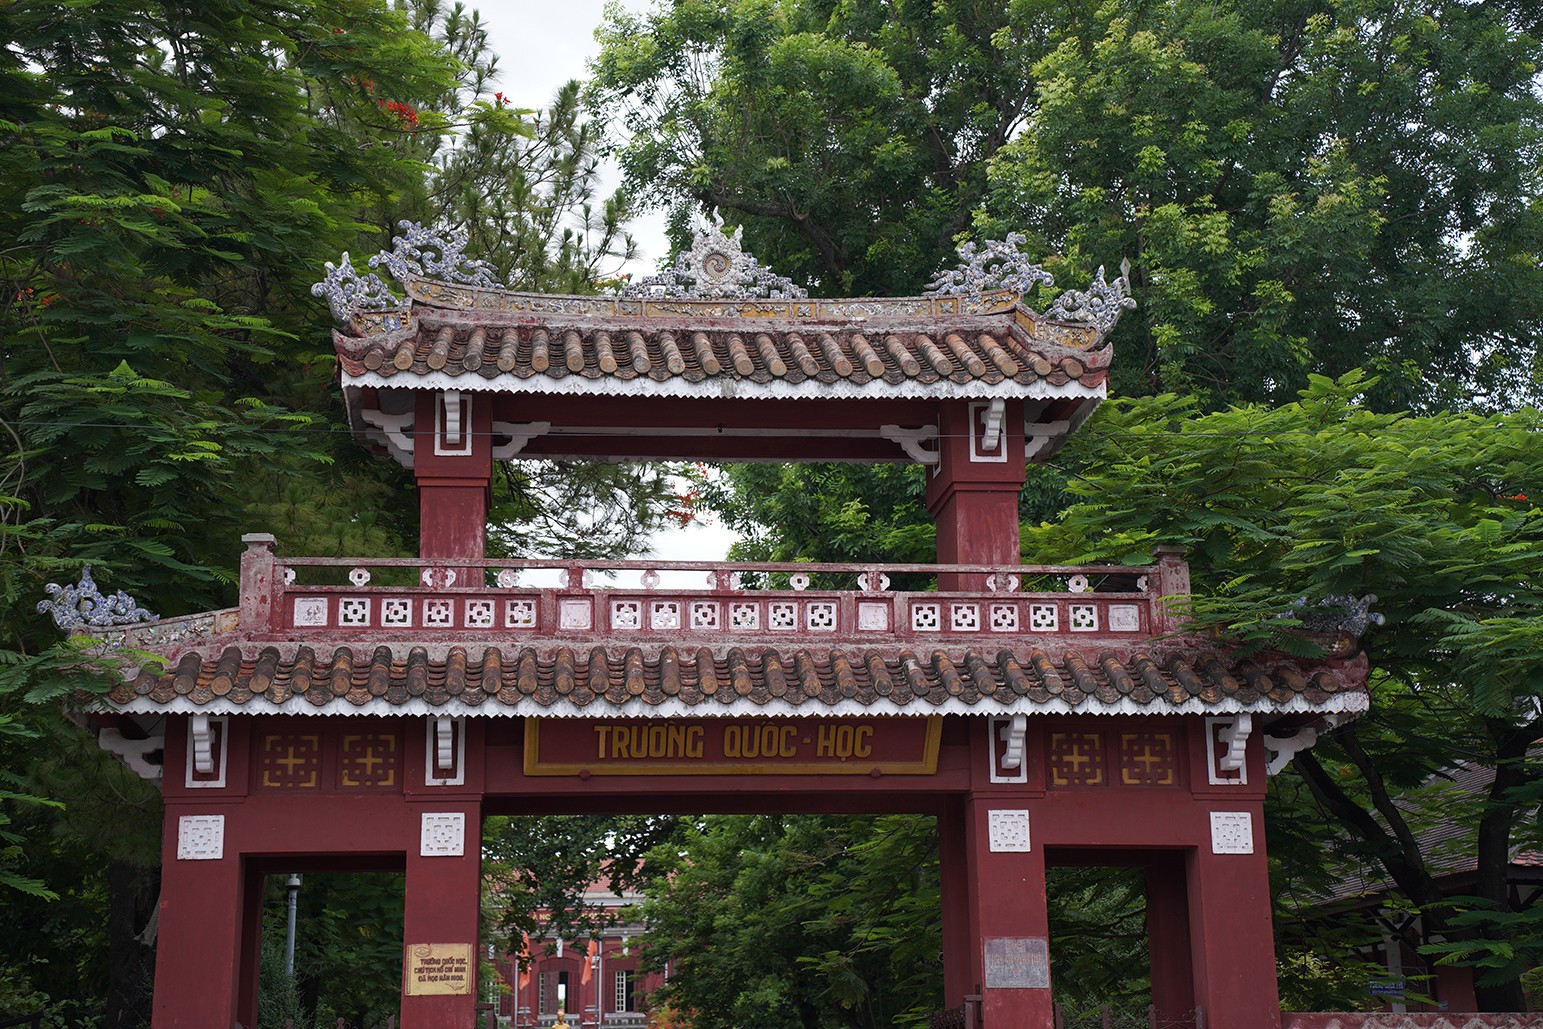 Cổng trường Quốc học Huế nổi bật trong sắc xanh của cây cối xung quanh.